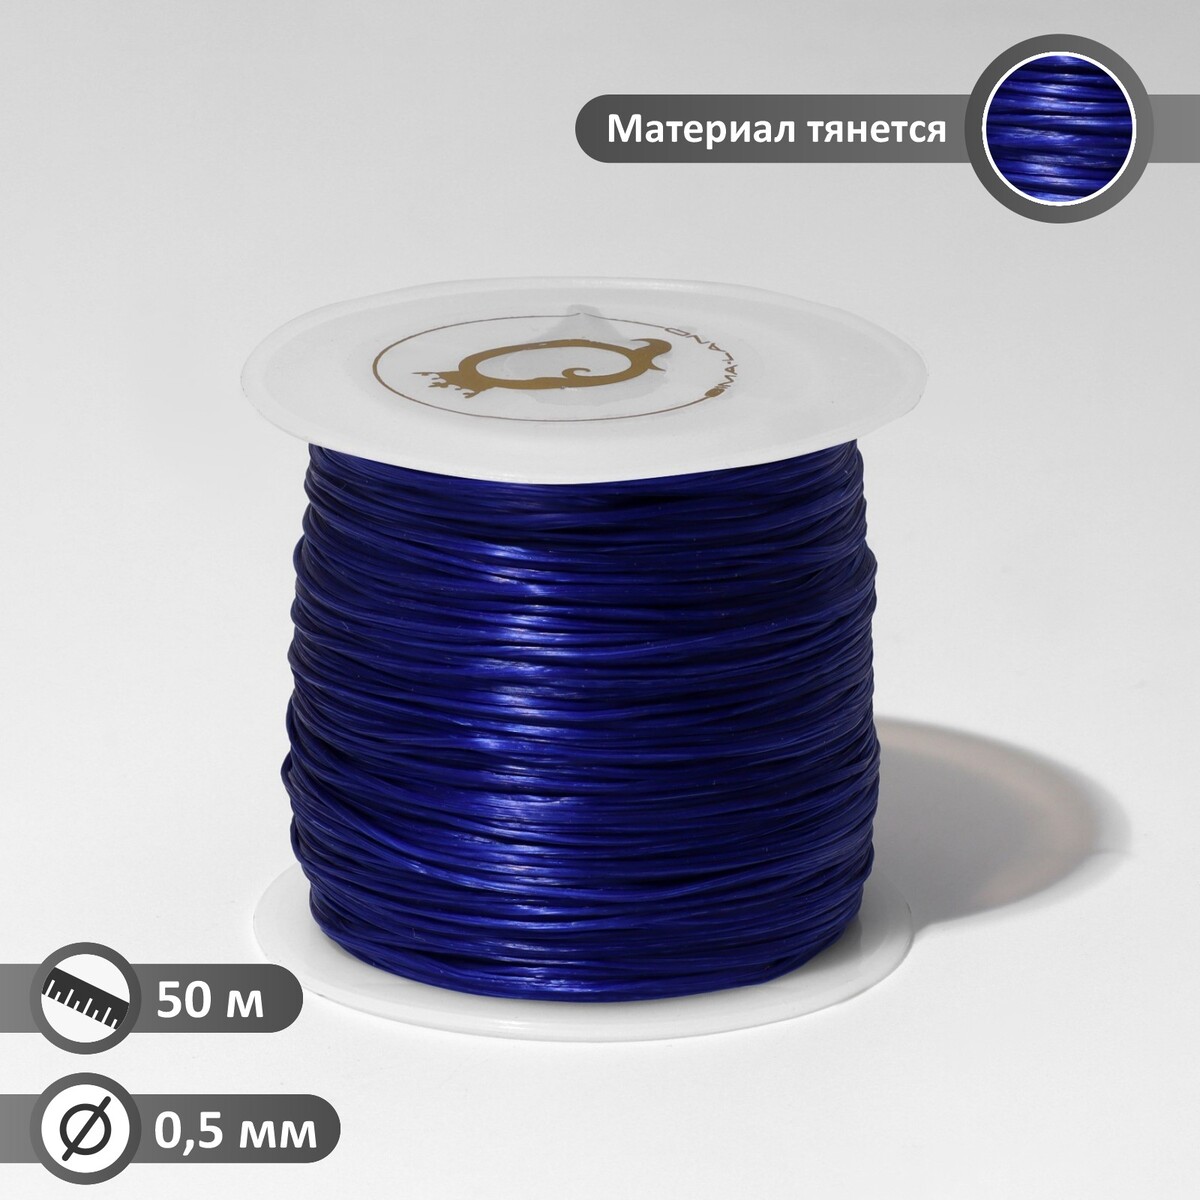 Нить силиконовая (резинка) d=0,5 мм, l=50 м (прочность 2250 денье), цвет синий неоновая нить cartage для подсветки салона адаптер питания 12 в 5 м синий